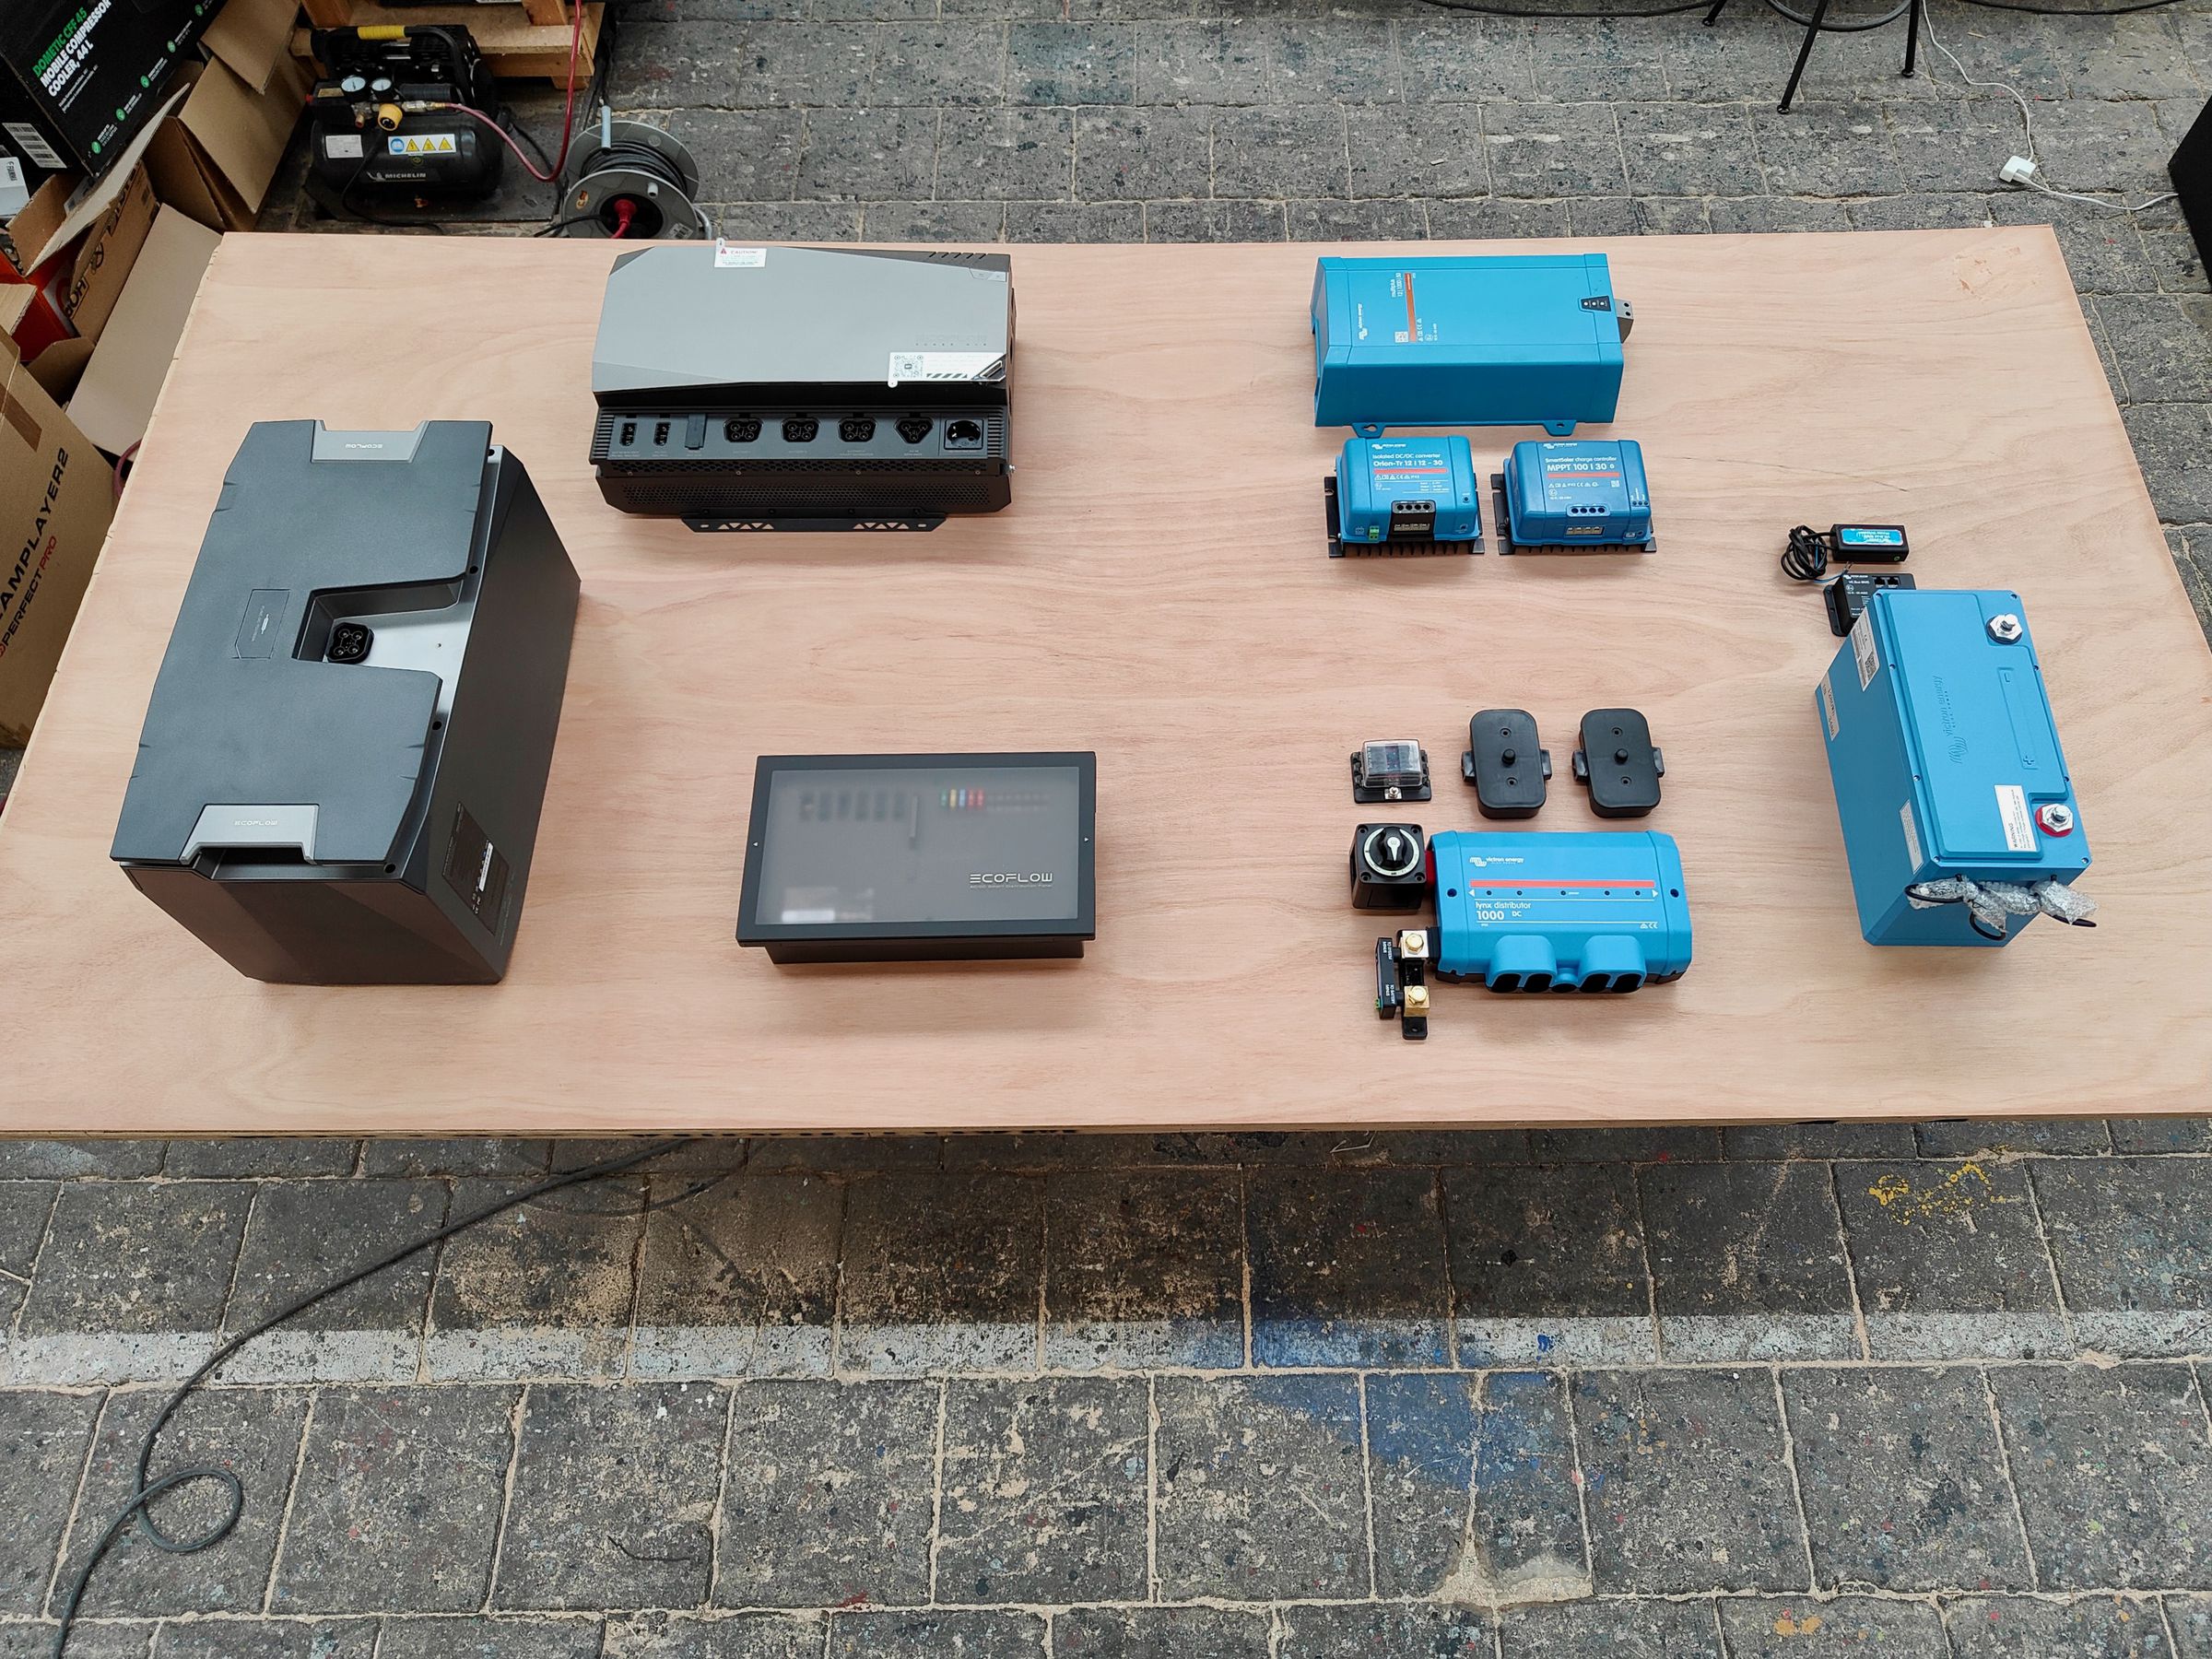 Componenti del Power Kit a sinistra rispecchiati da un sistema Victron simile (con capacità della batteria molto inferiore) in blu a destra. EcoFlow richiede molti meno componenti.